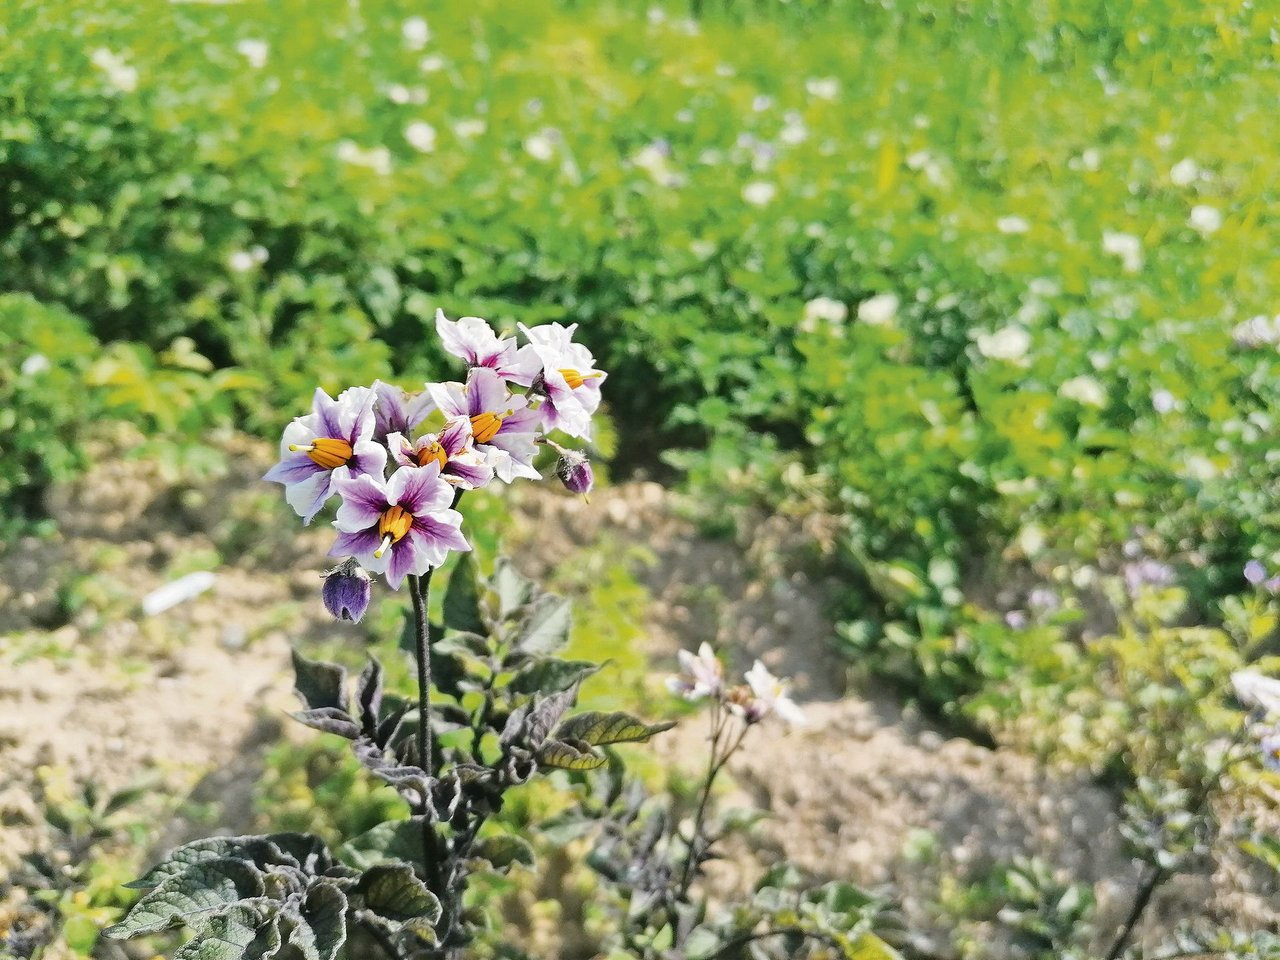 Die Blüten der Sorte Blaukraut duften zwar nach Vanille, sie hat aber nur wenig Ertrag. (Bild Belinda Balmer)